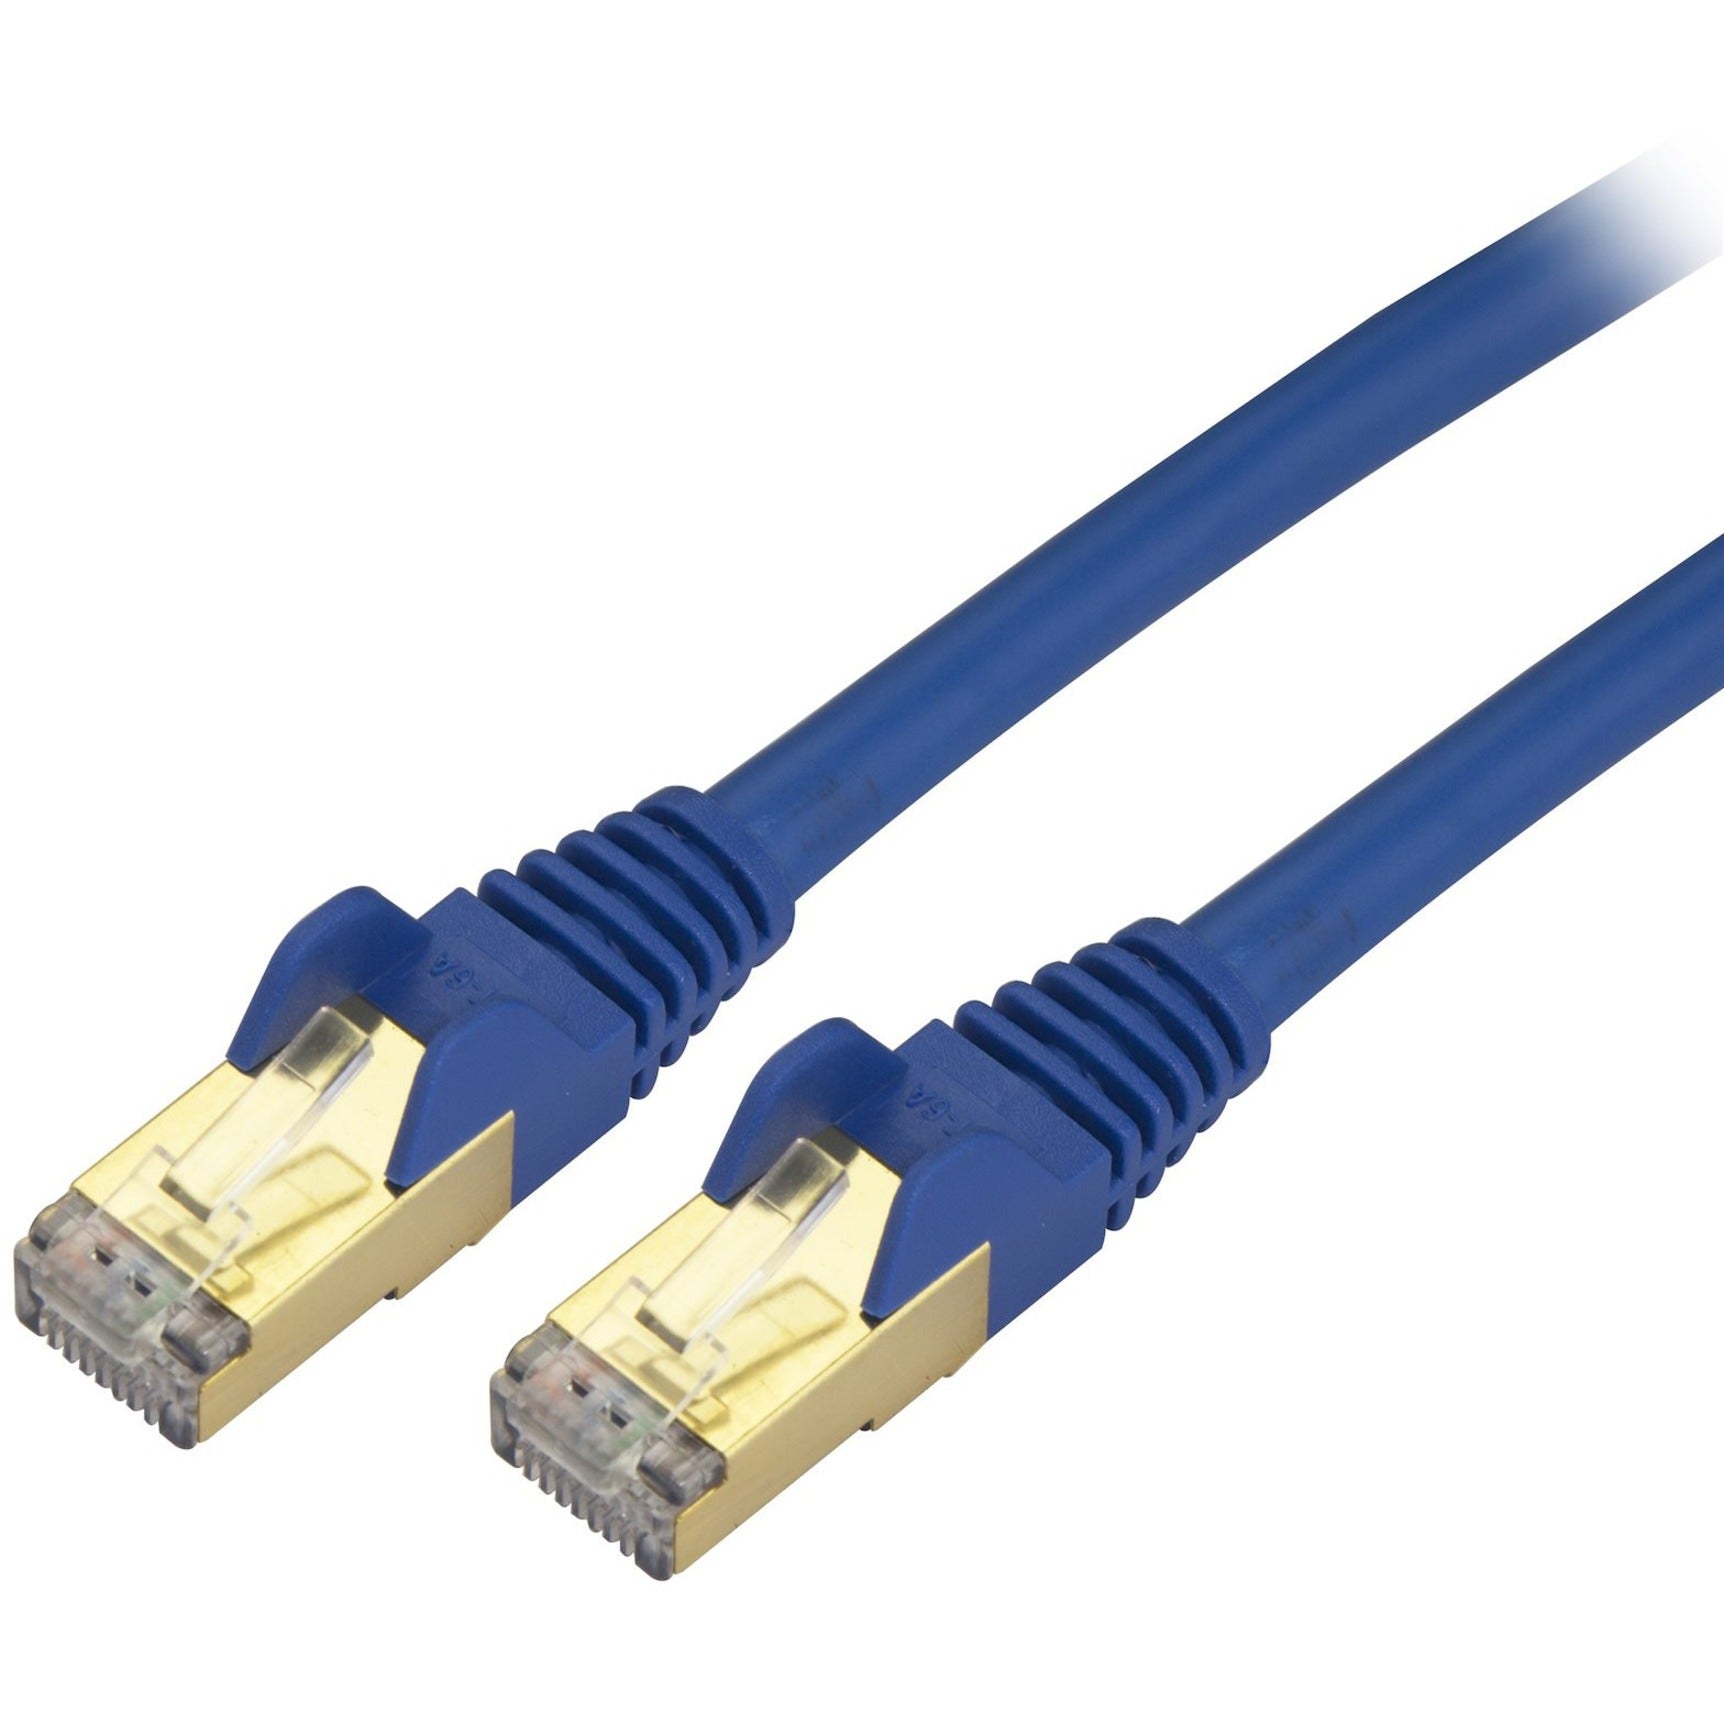 StarTech.com C6ASPAT35BL Cat.6a STP Patch Network Cable 35 ft Blue 10Gb Snagless Ethernet  StarTech.com C6ASPAT35BL Câble réseau à écran Cat.6a STP 35 pi Bleu Ethernet 10 Gb sans accroc